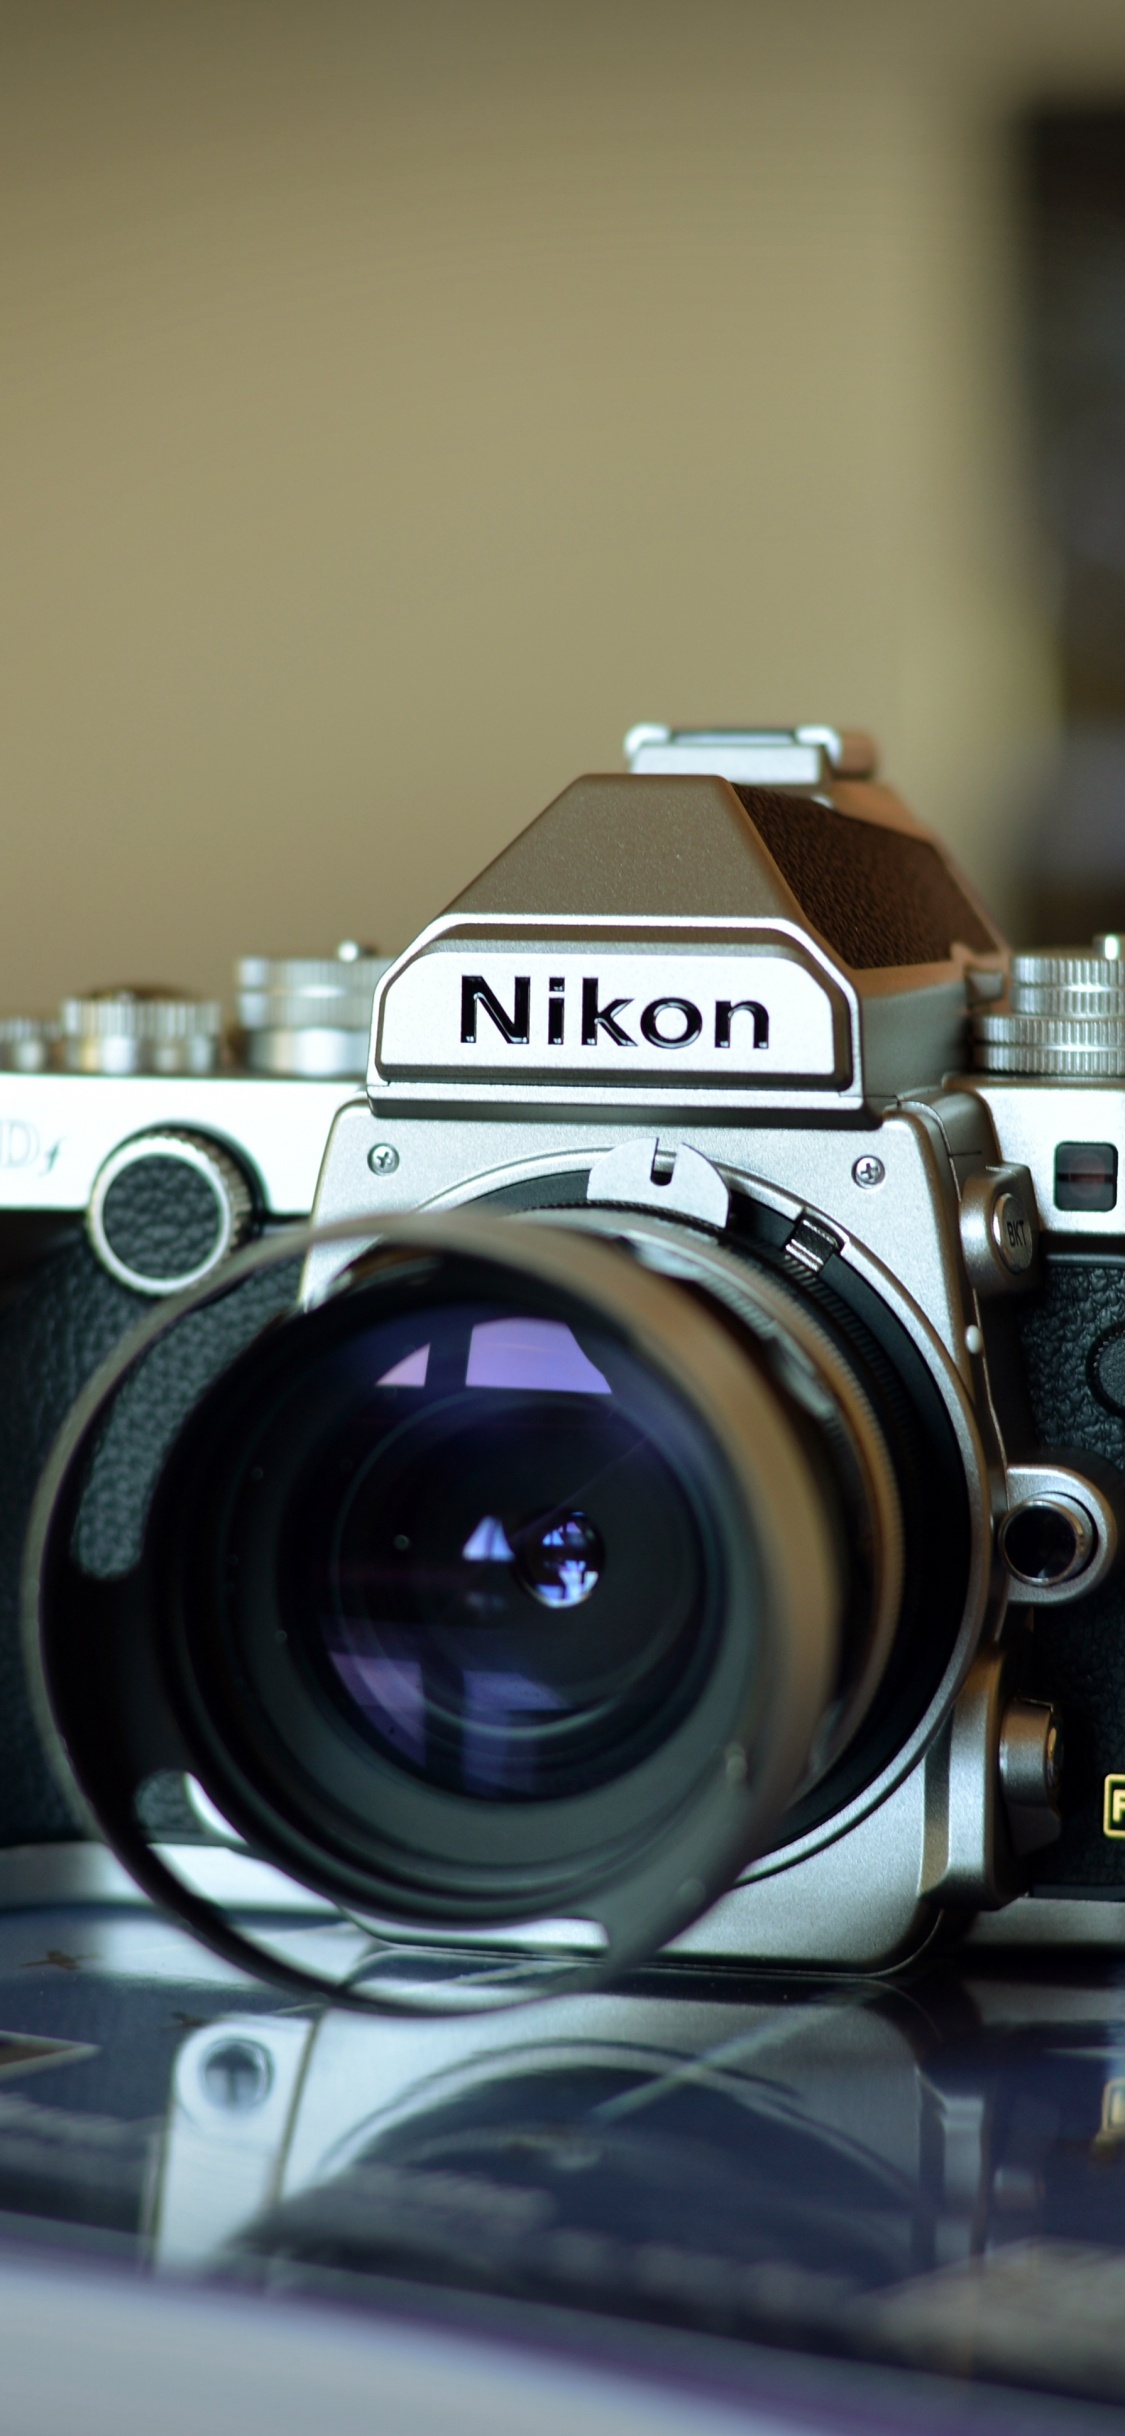 尼康, 光学照相机, 拍摄像头, 摄像机的附件, 数字照相机 壁纸 1125x2436 允许